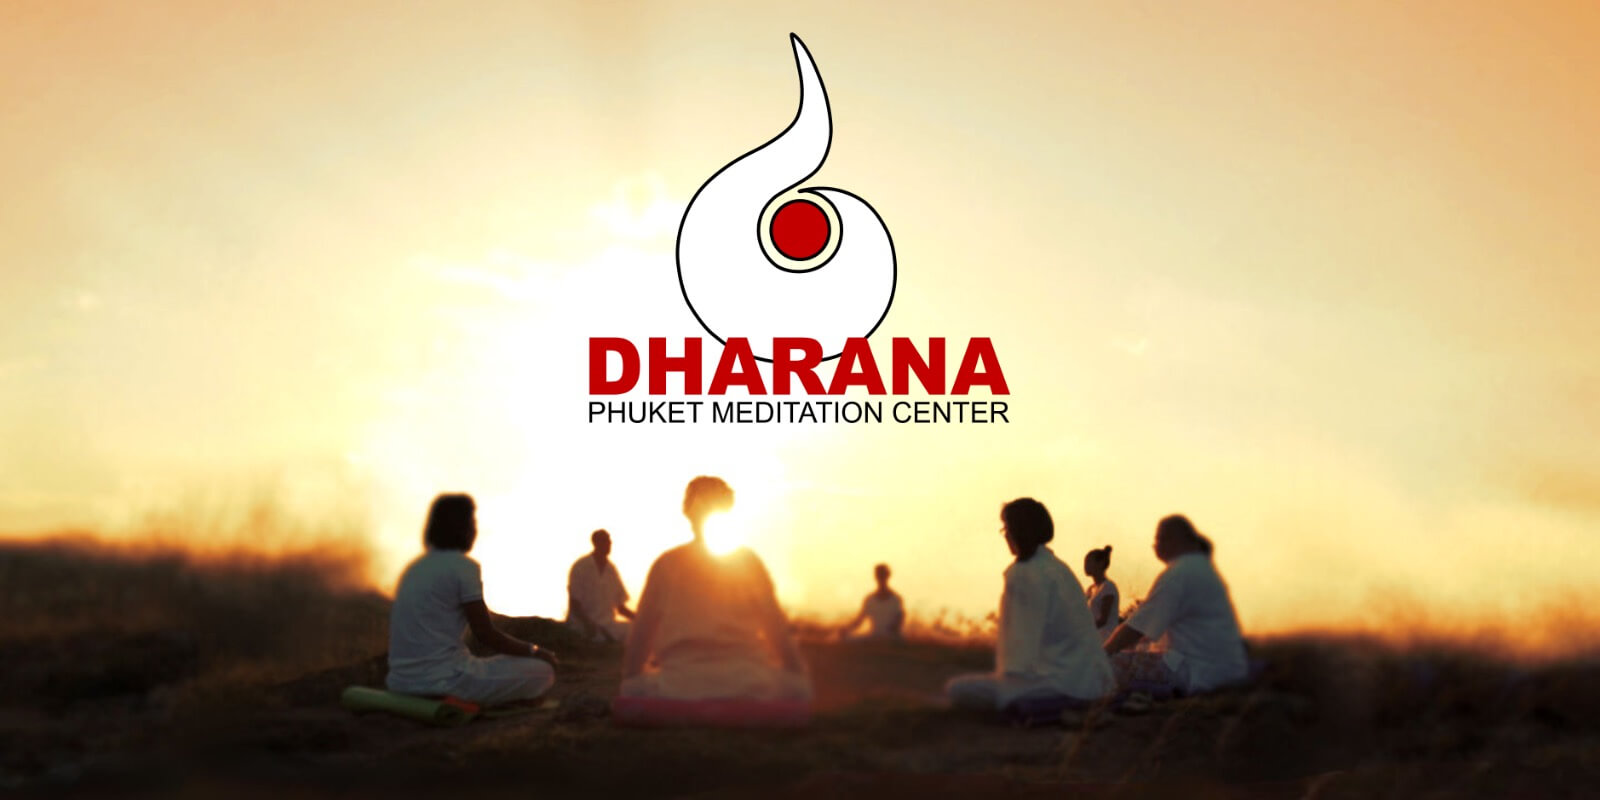 Dharana - Phuket Meditation Center Logo with people meditating during Sunrise.